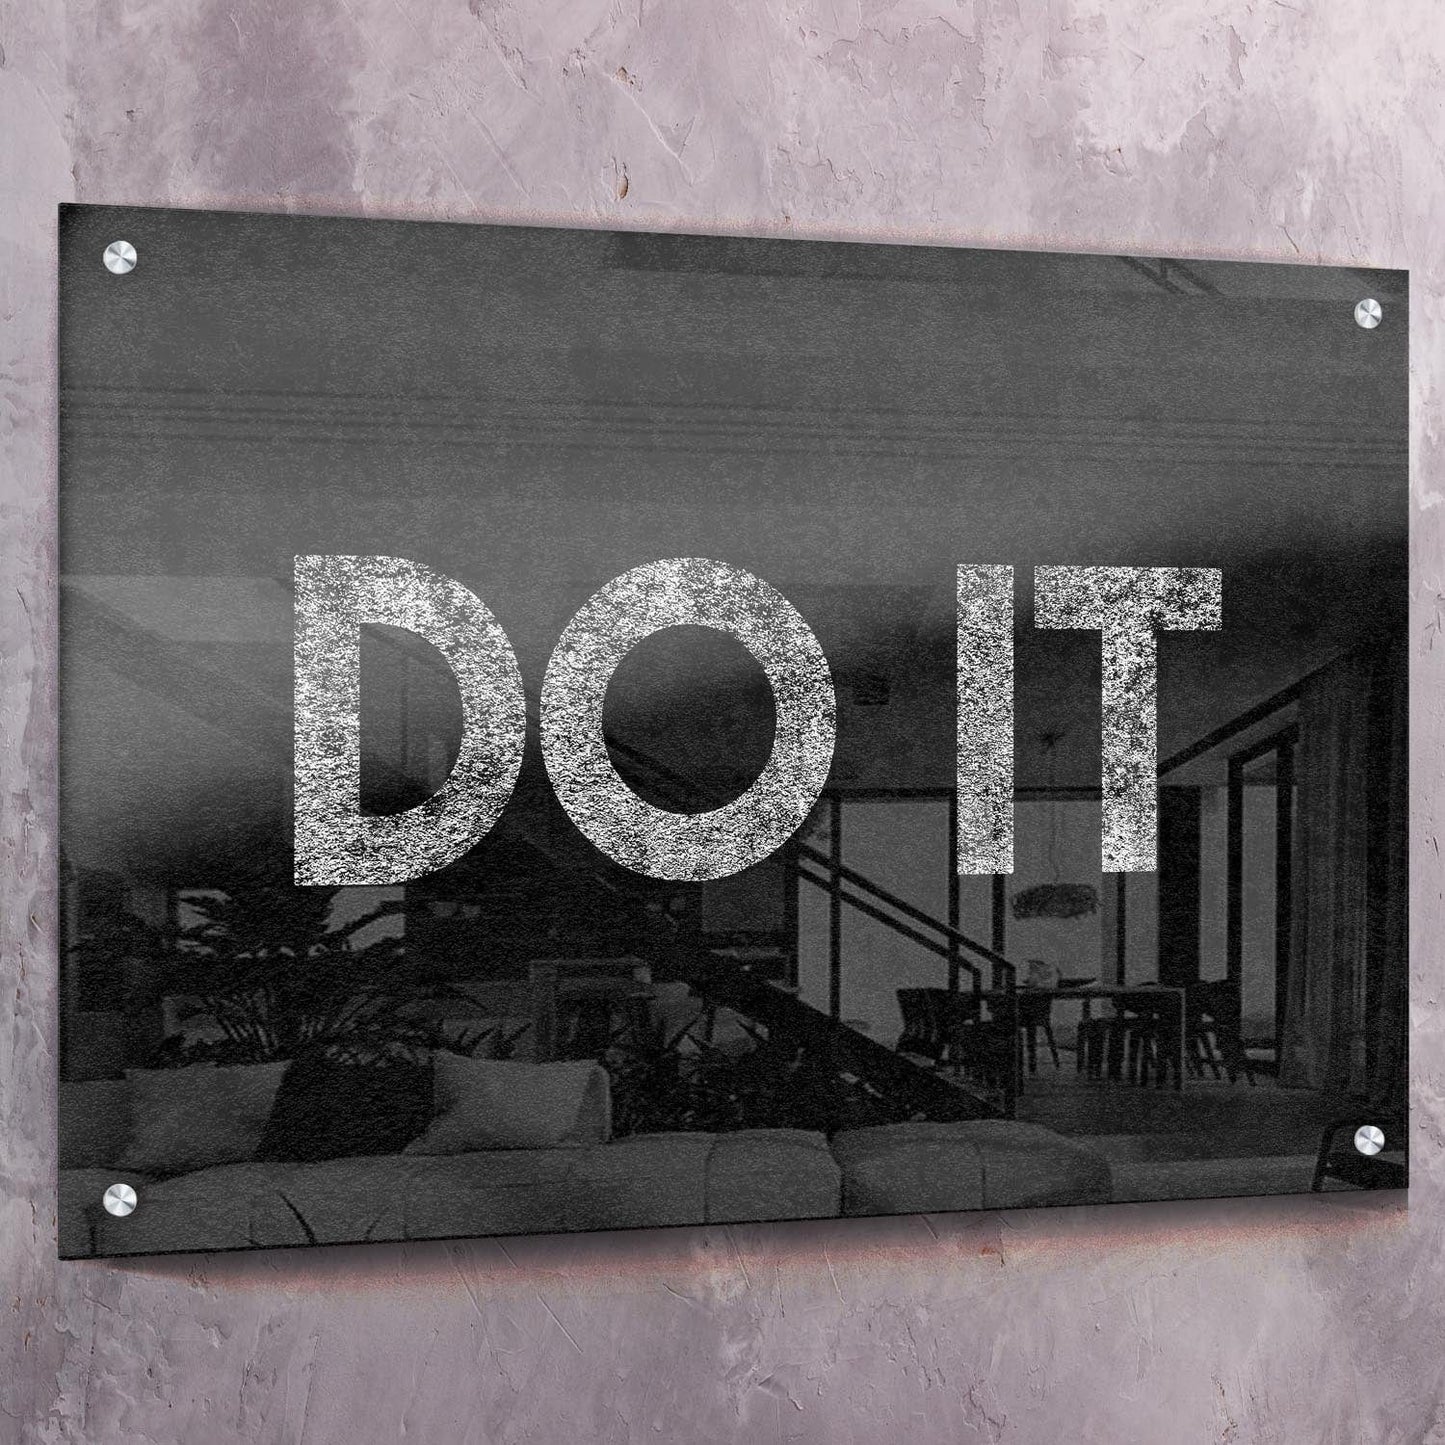 Do It Wall Art | Inspirational Wall Art Motivational Wall Art Quotes Office Art | ImpaktMaker Exclusive Canvas Art Landscape